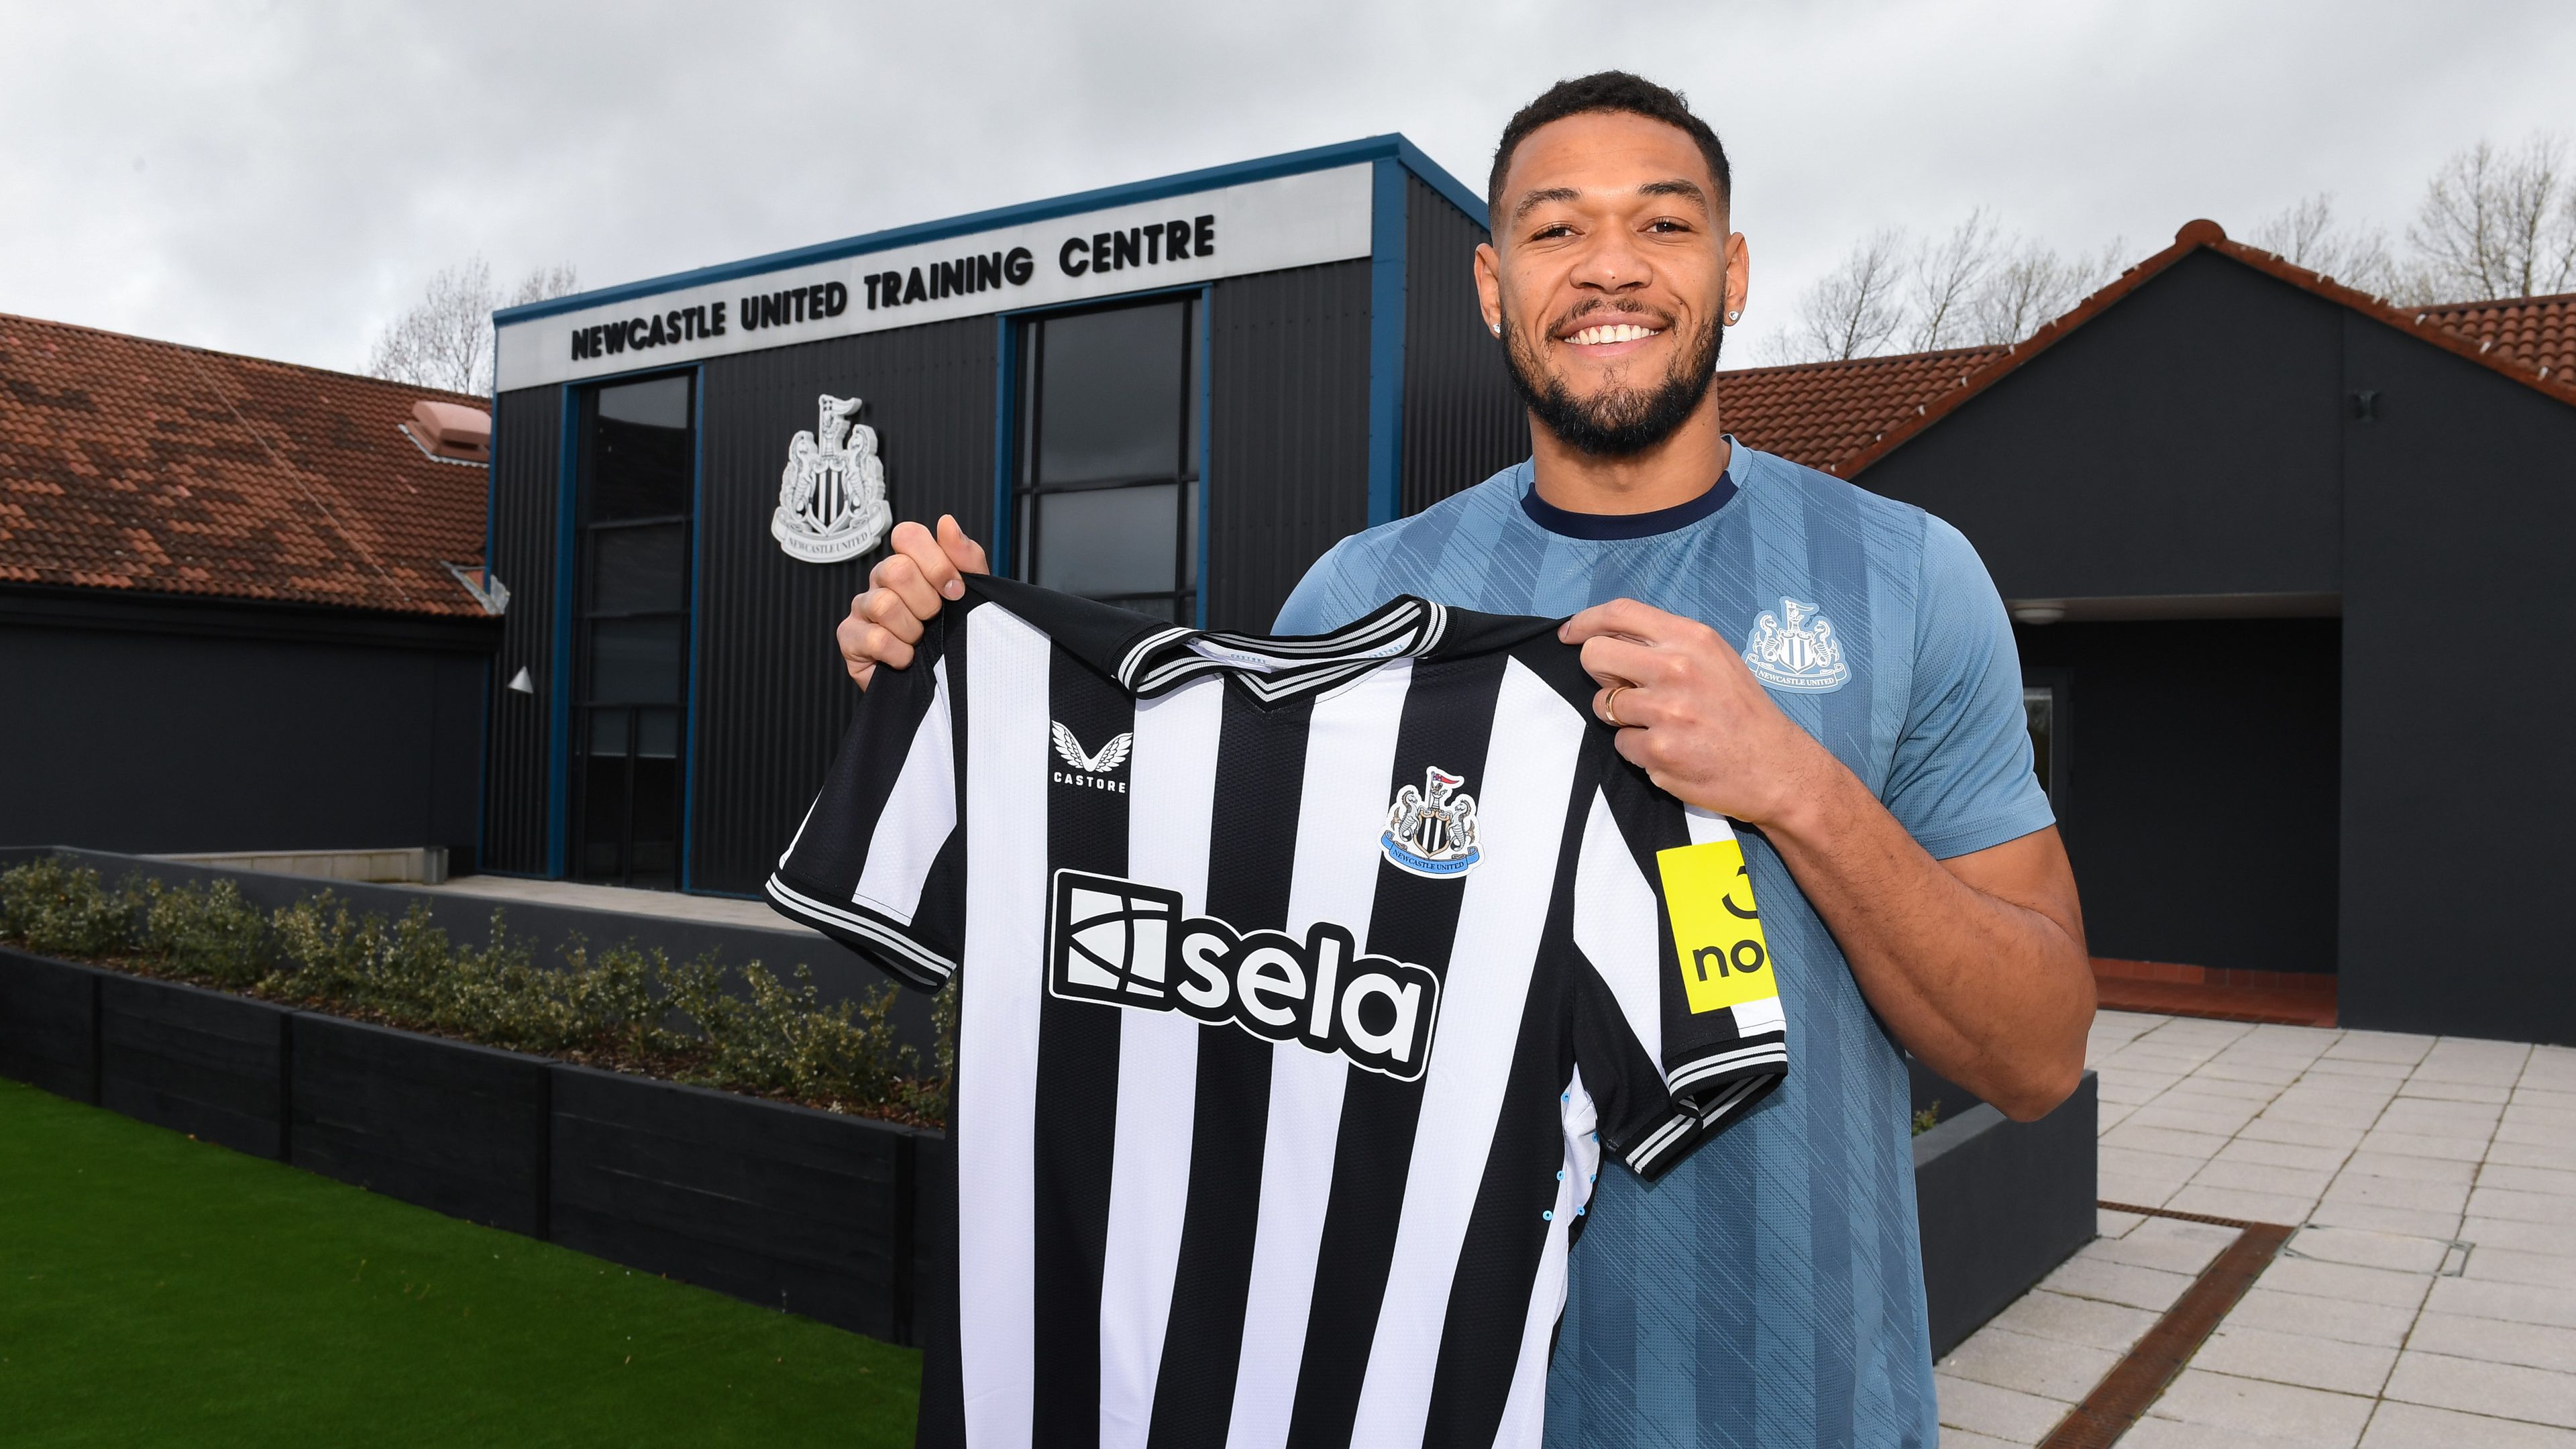 Új szerződést írt alá a Newcastle United kulcsembere – hivatalos